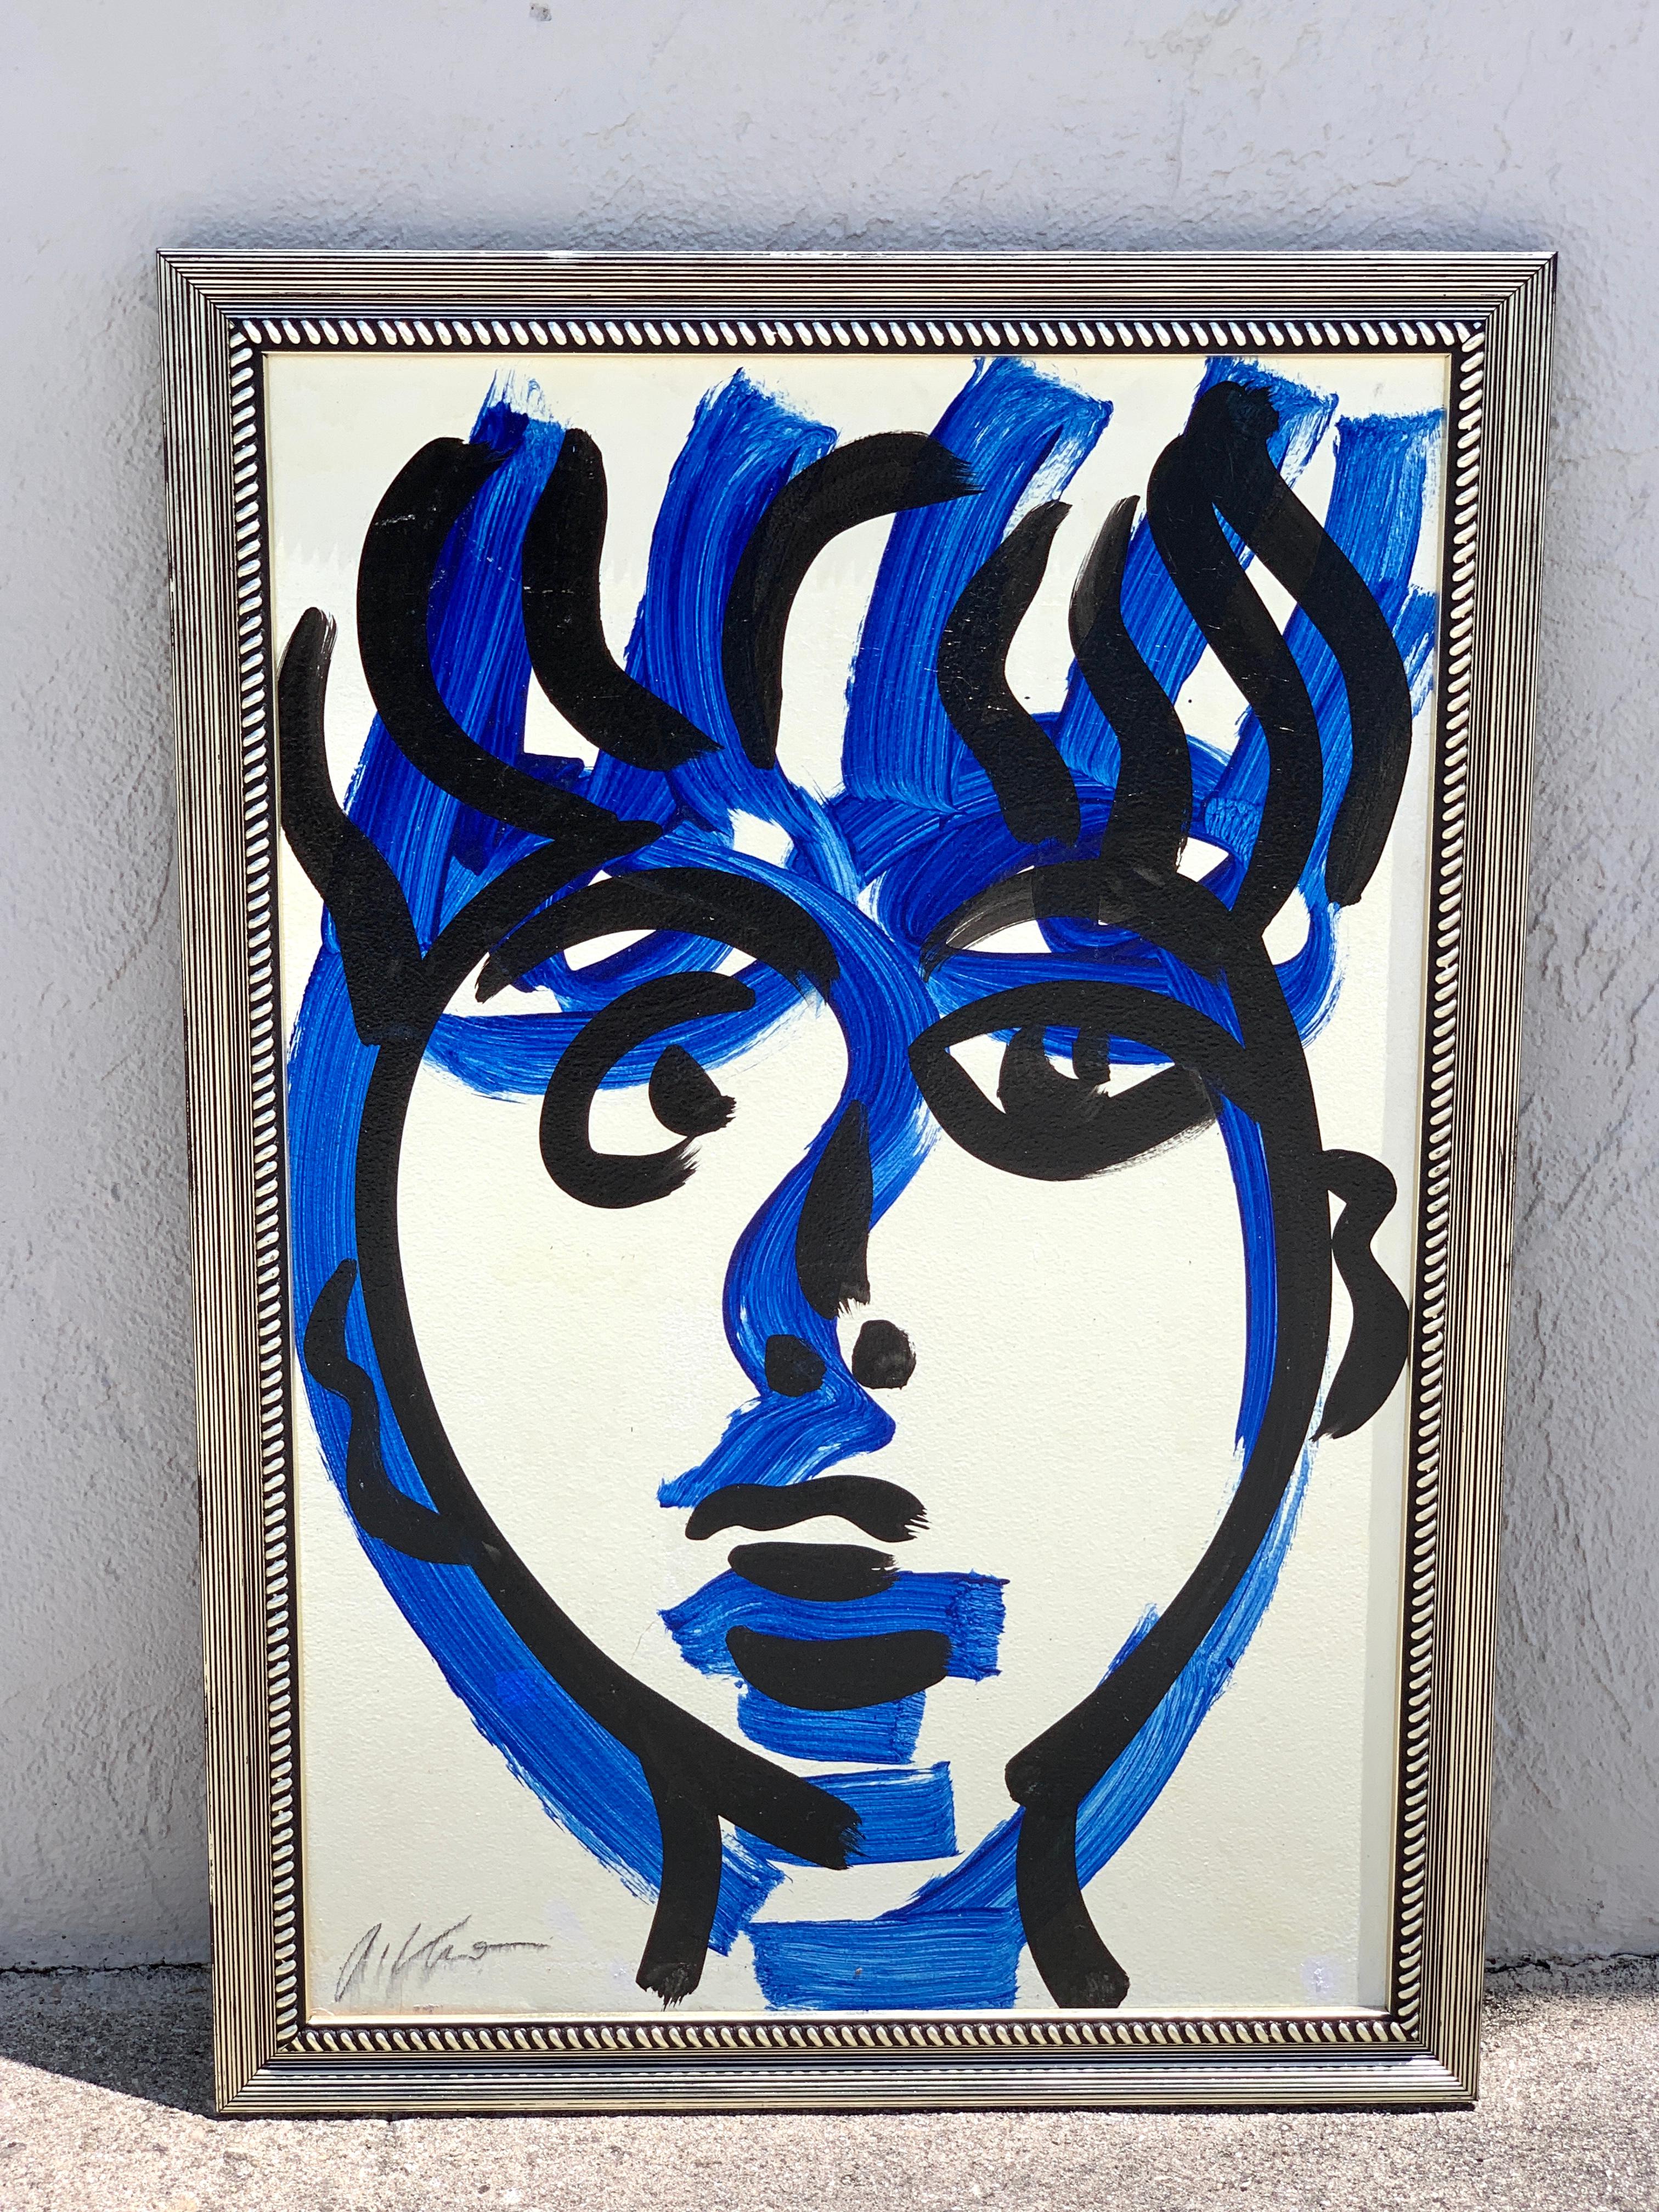 Peter Keil, portrait in blue- large scale
Oil on artist board
Signed lower left in script
Newly framed
Board 24